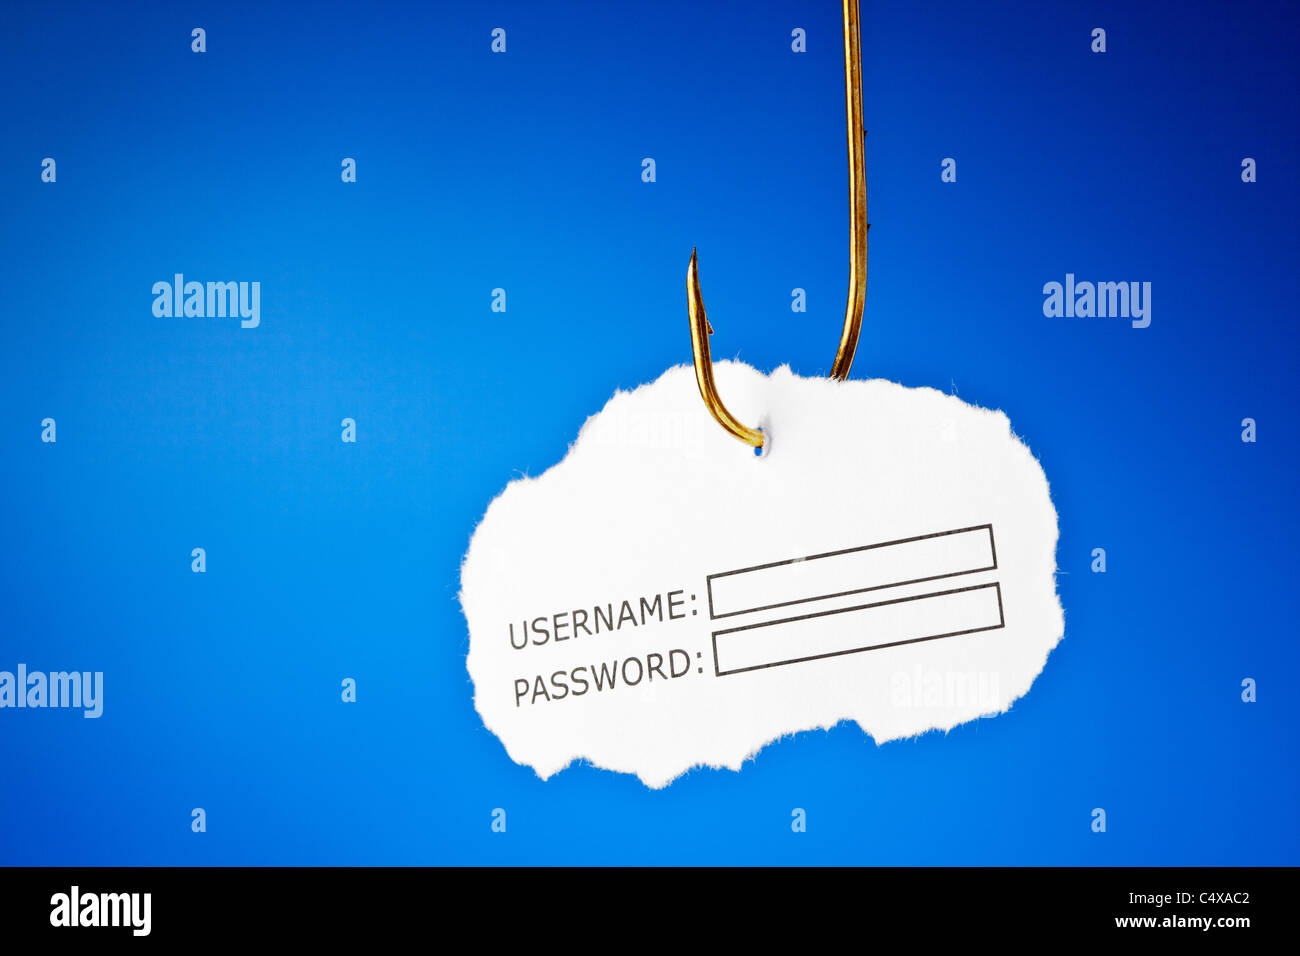 Benutzername und Passwort an einem Angelhaken. Konzeptuelles Bild über das Risiko des Diebstahls von Internetidentitäten, auch bekannt als Phishing. Stockfoto